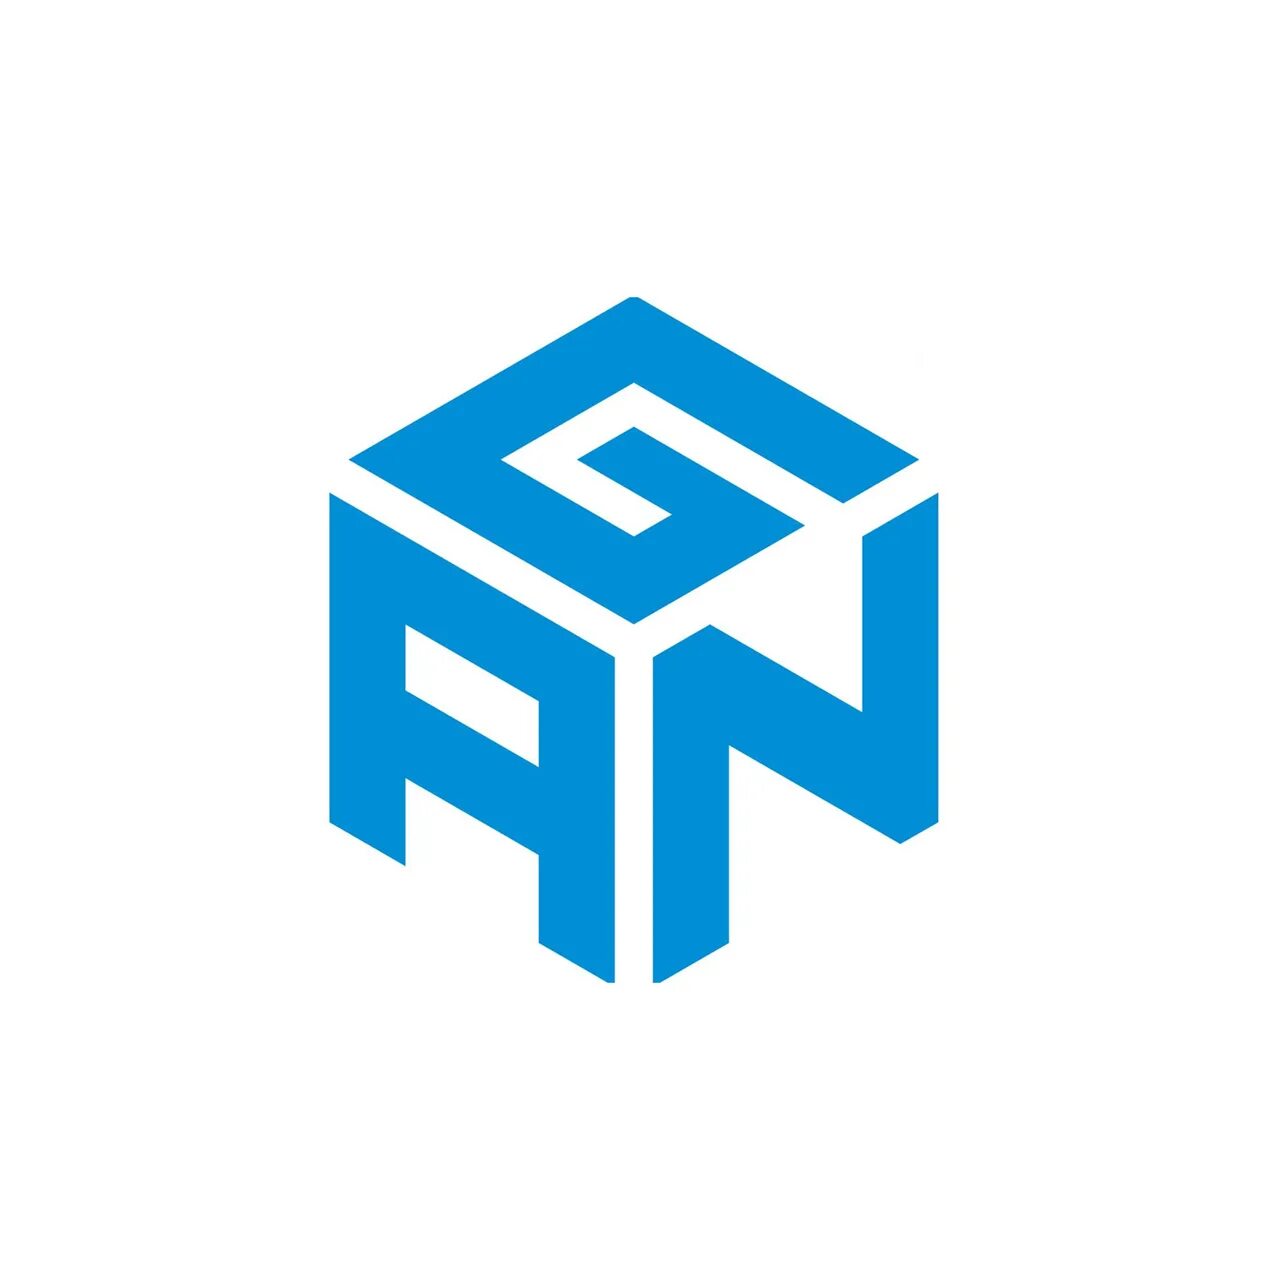 Логотип MOYU. Gan Cube. Логотип кубик. Компания gancube.